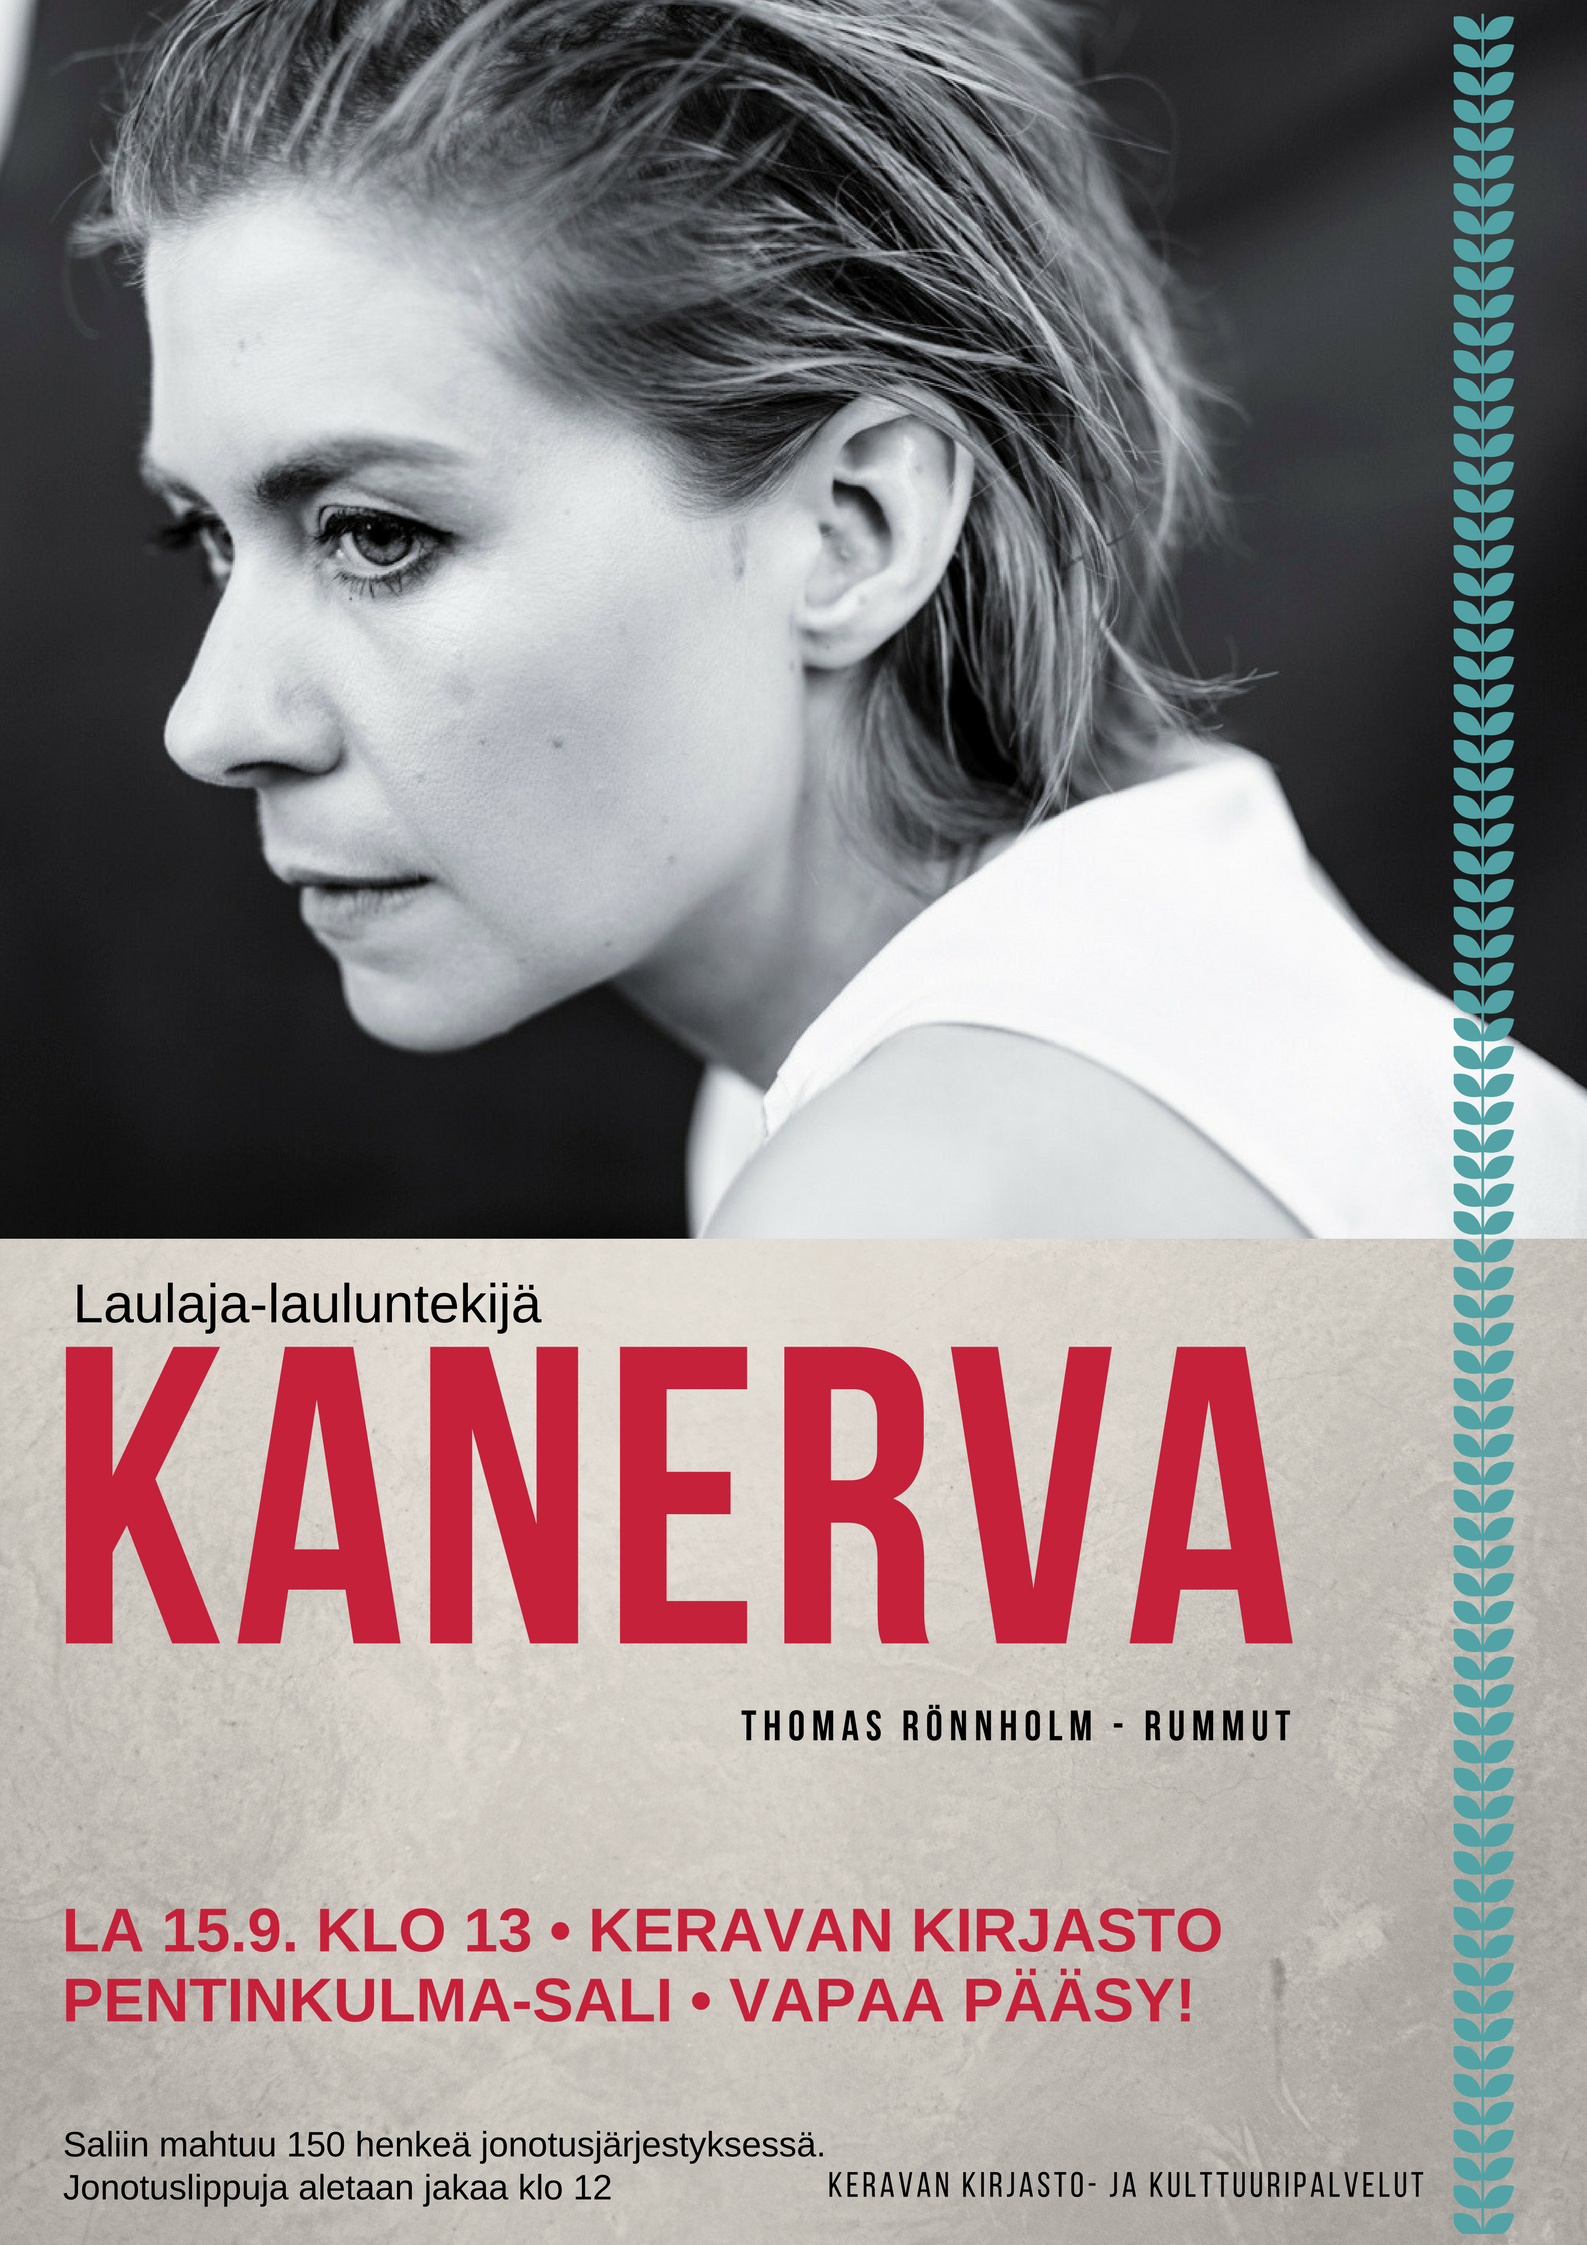 Kanerva esiintyy Keravan kirjaston Pentinkulma-salissa 15.9.2018.